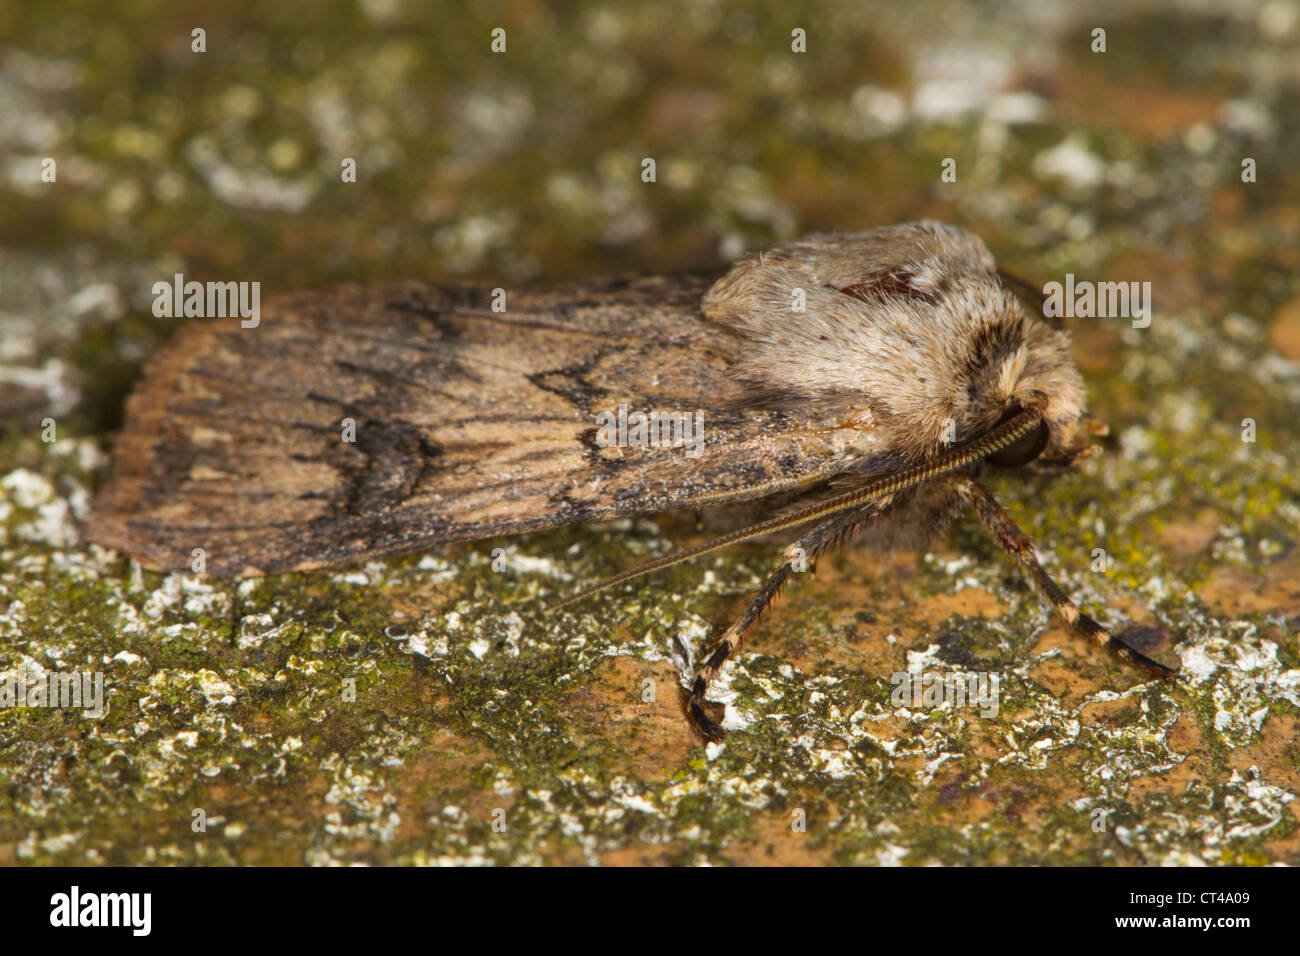 En forme de navette Dart (Agrotis puta) papillon posé sur un rocher couvert de lichens Banque D'Images